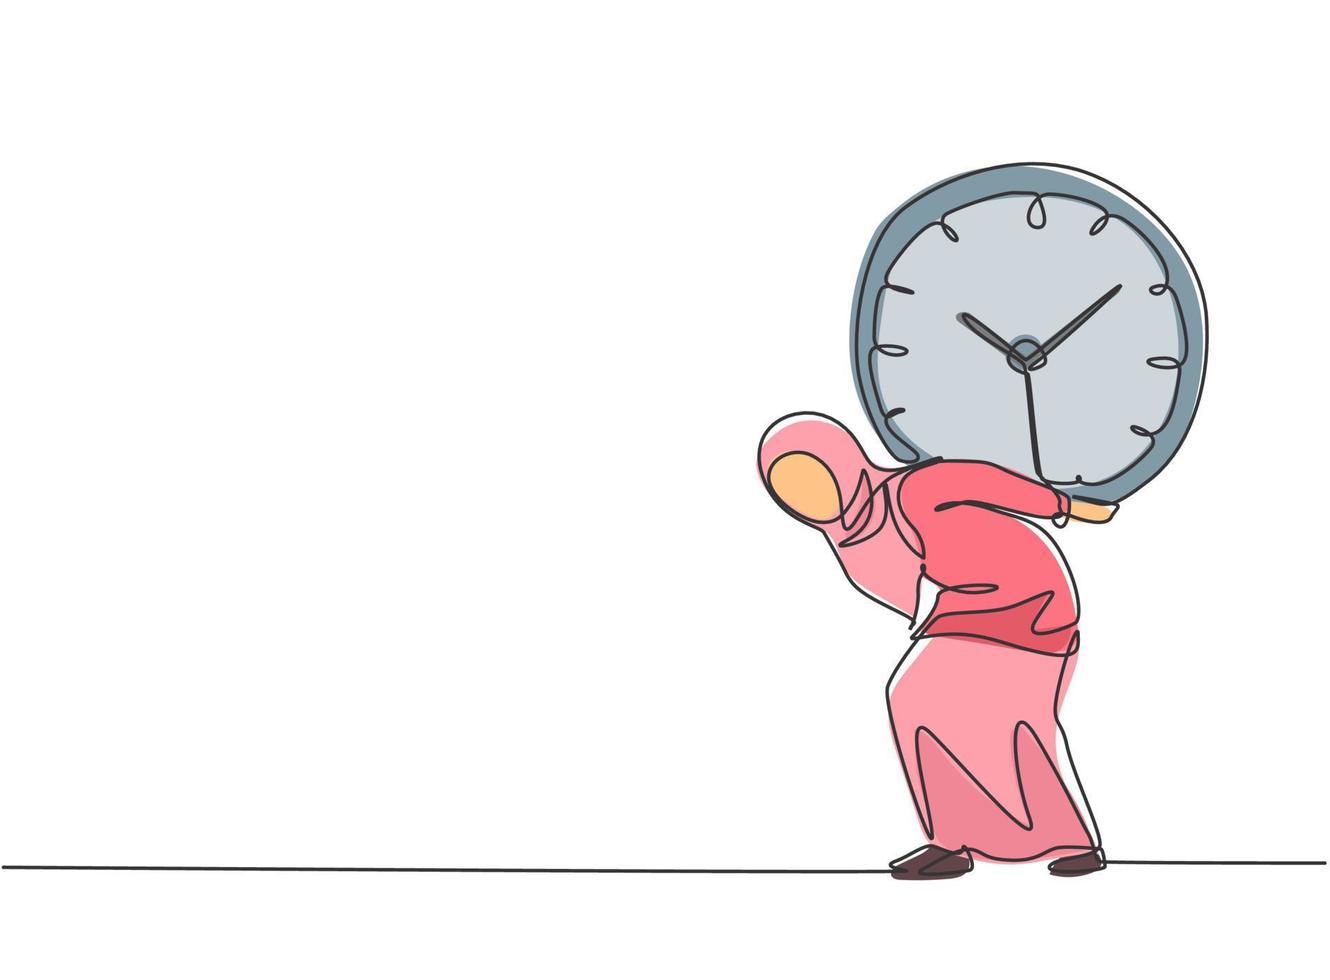 Un solo dibujo de una línea de una joven mujer de negocios árabe que llevaba al hombro un pesado reloj analógico grande con la espalda. concepto de metáfora de disciplina empresarial. Ilustración de vector gráfico de diseño de dibujo de línea continua.